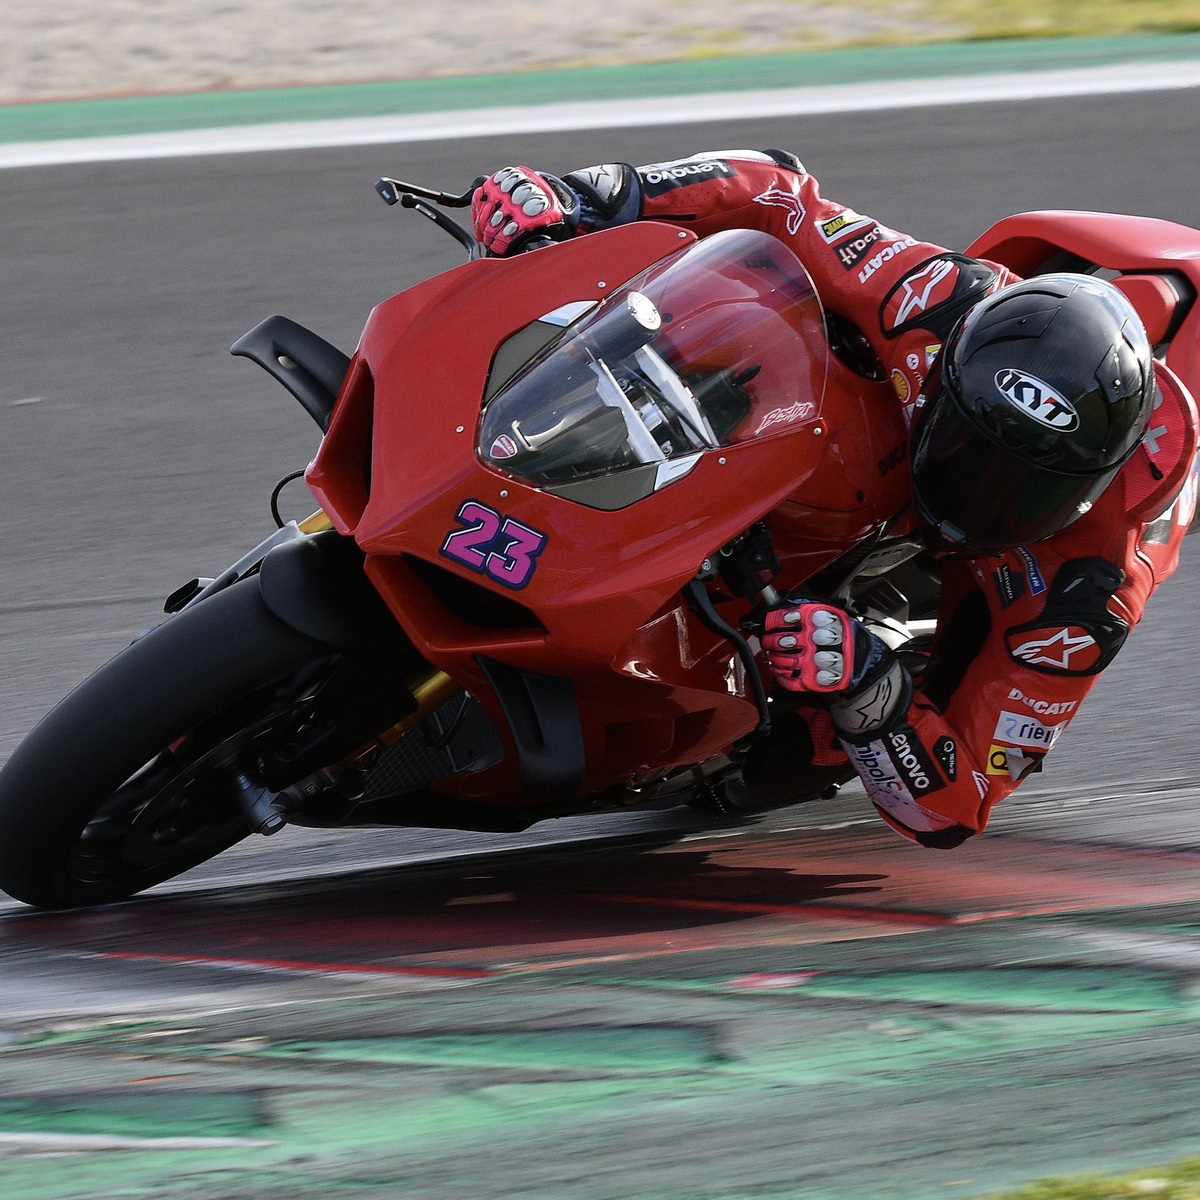 Энеа Бастианини на тестах с Ducati V4S - все в порядке!